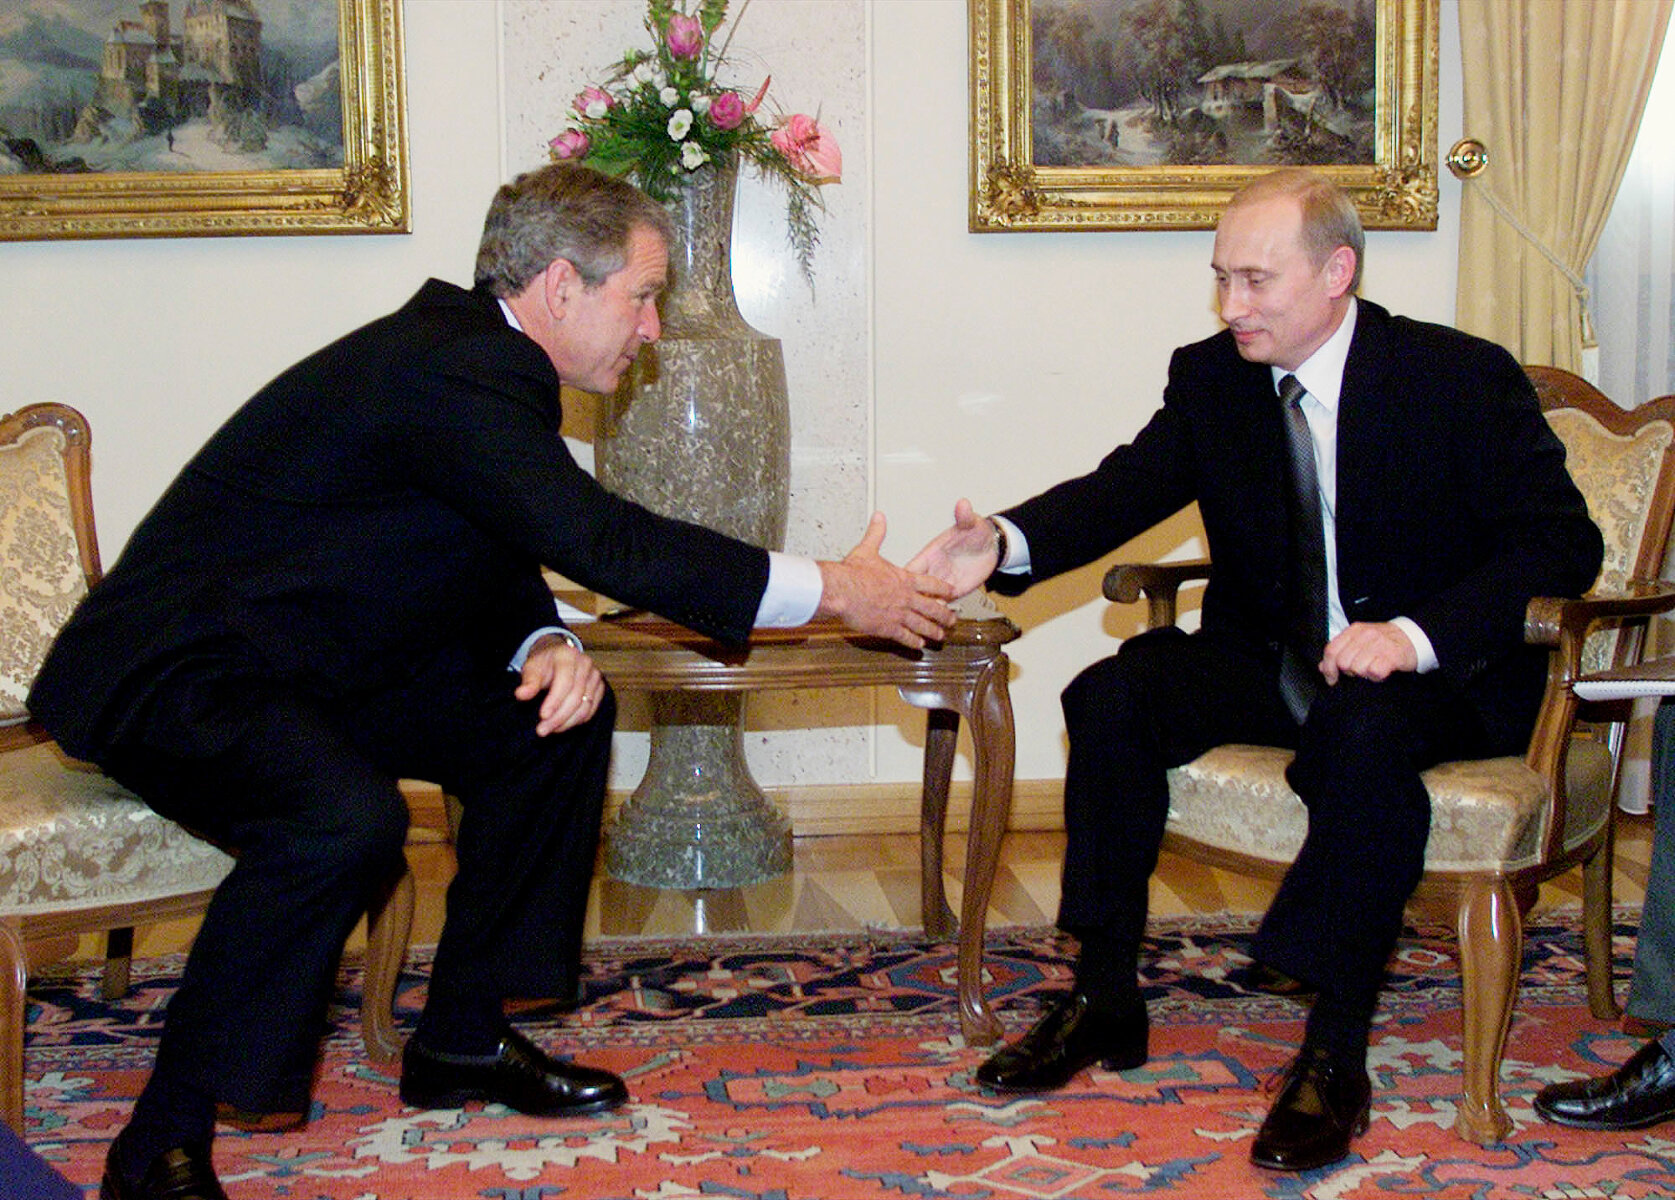 <p>Владимир Путин и Джордж Буш впервые встретились 16 июня 2001 года на саммите в Любляне. Буш впоследствии <a href="https://www.washingtonpost.com/business/economy/bush-saw-putins-soul-obama-wants-to-appeal-to-his-brain/2015/12/01/264f0c7c-984b-11e5-8917-653b65c809eb_story.html" target="_blank">вспоминал</a>, что &laquo;заглянул в глаза&raquo; российскому президенту,&nbsp;&laquo;увидел его душу&raquo; и &laquo;посчитал прямолинейным и достойным доверия&raquo;.</p>